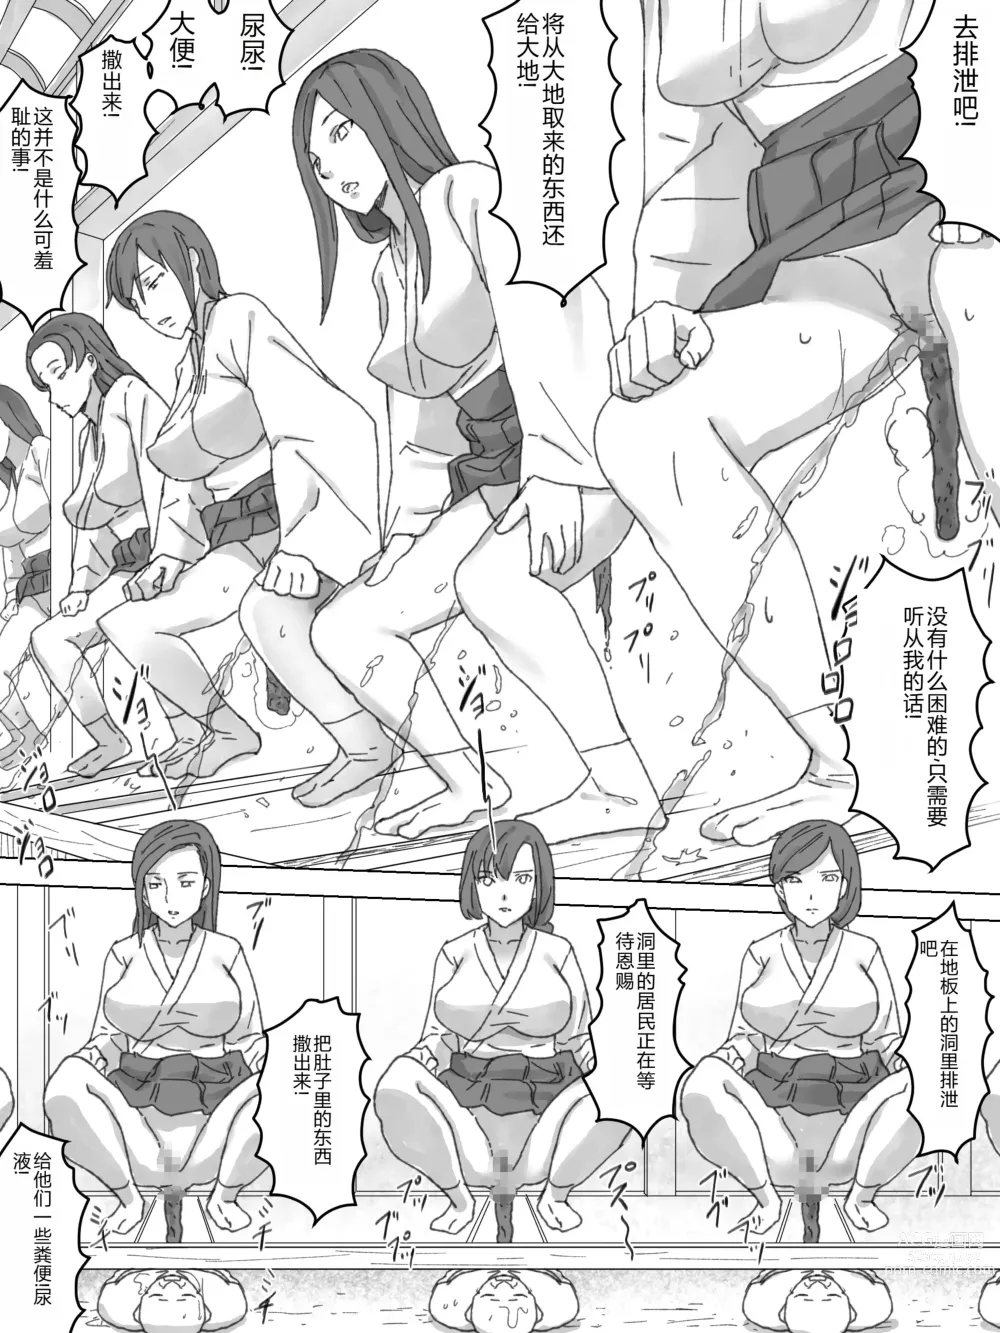 Page 16 of doujinshi Miko no Obutsu o Saidan ni